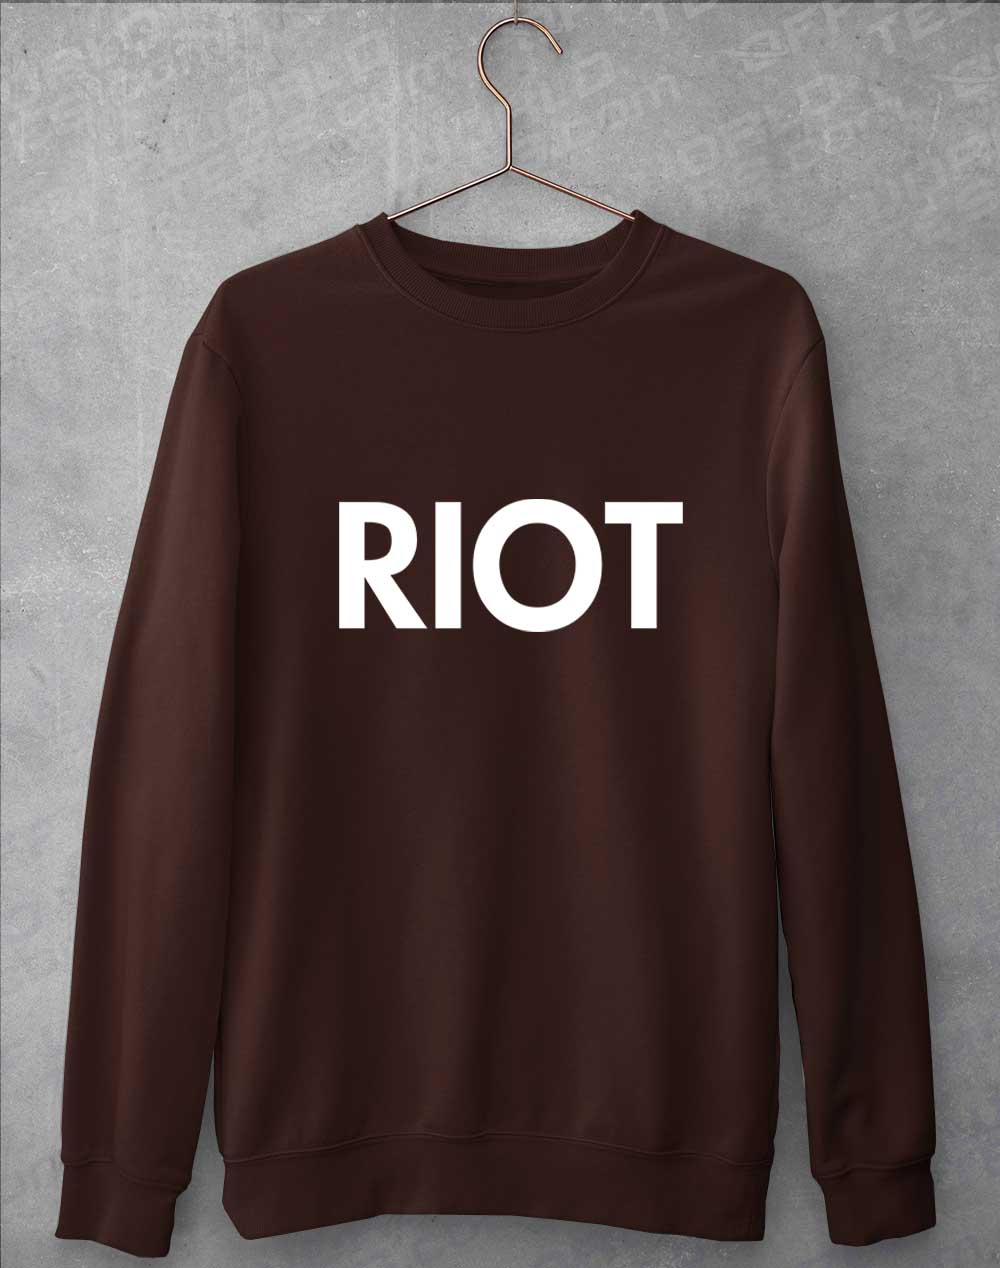 Hot Chocolate - Mac's Riot Sweatshirt